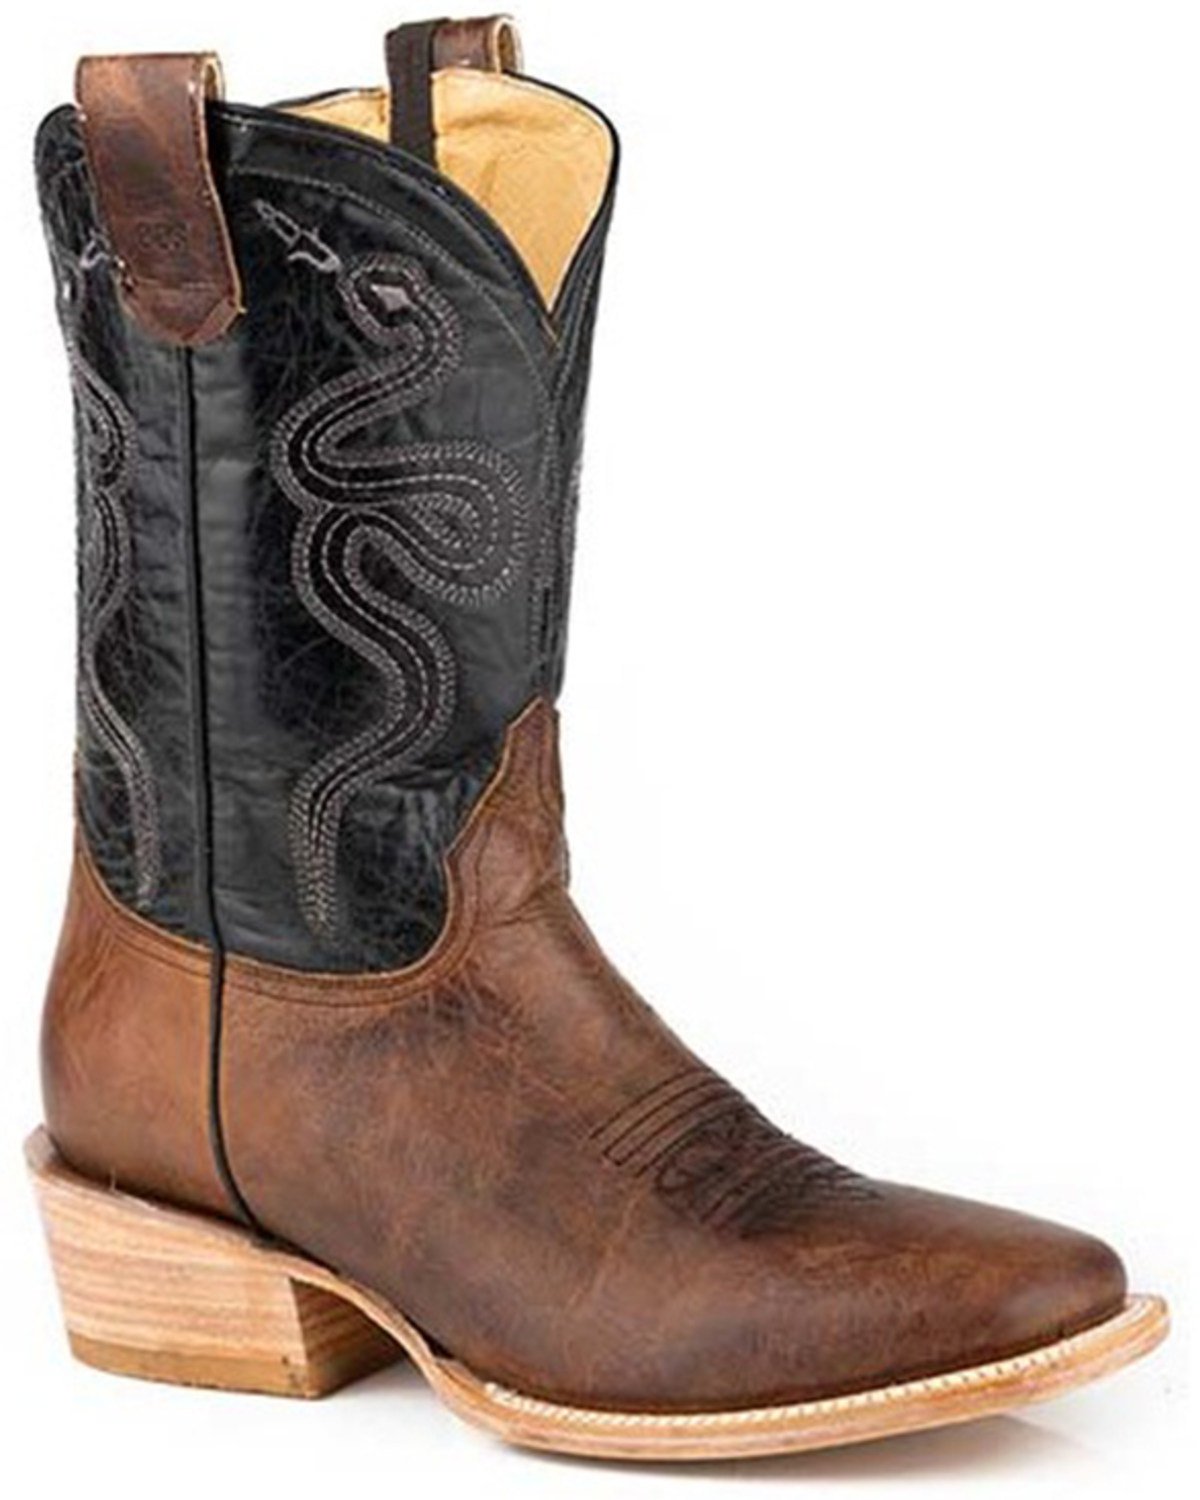 Roper Men's Ride Em' Cowboy Concealed Carry Western Boots